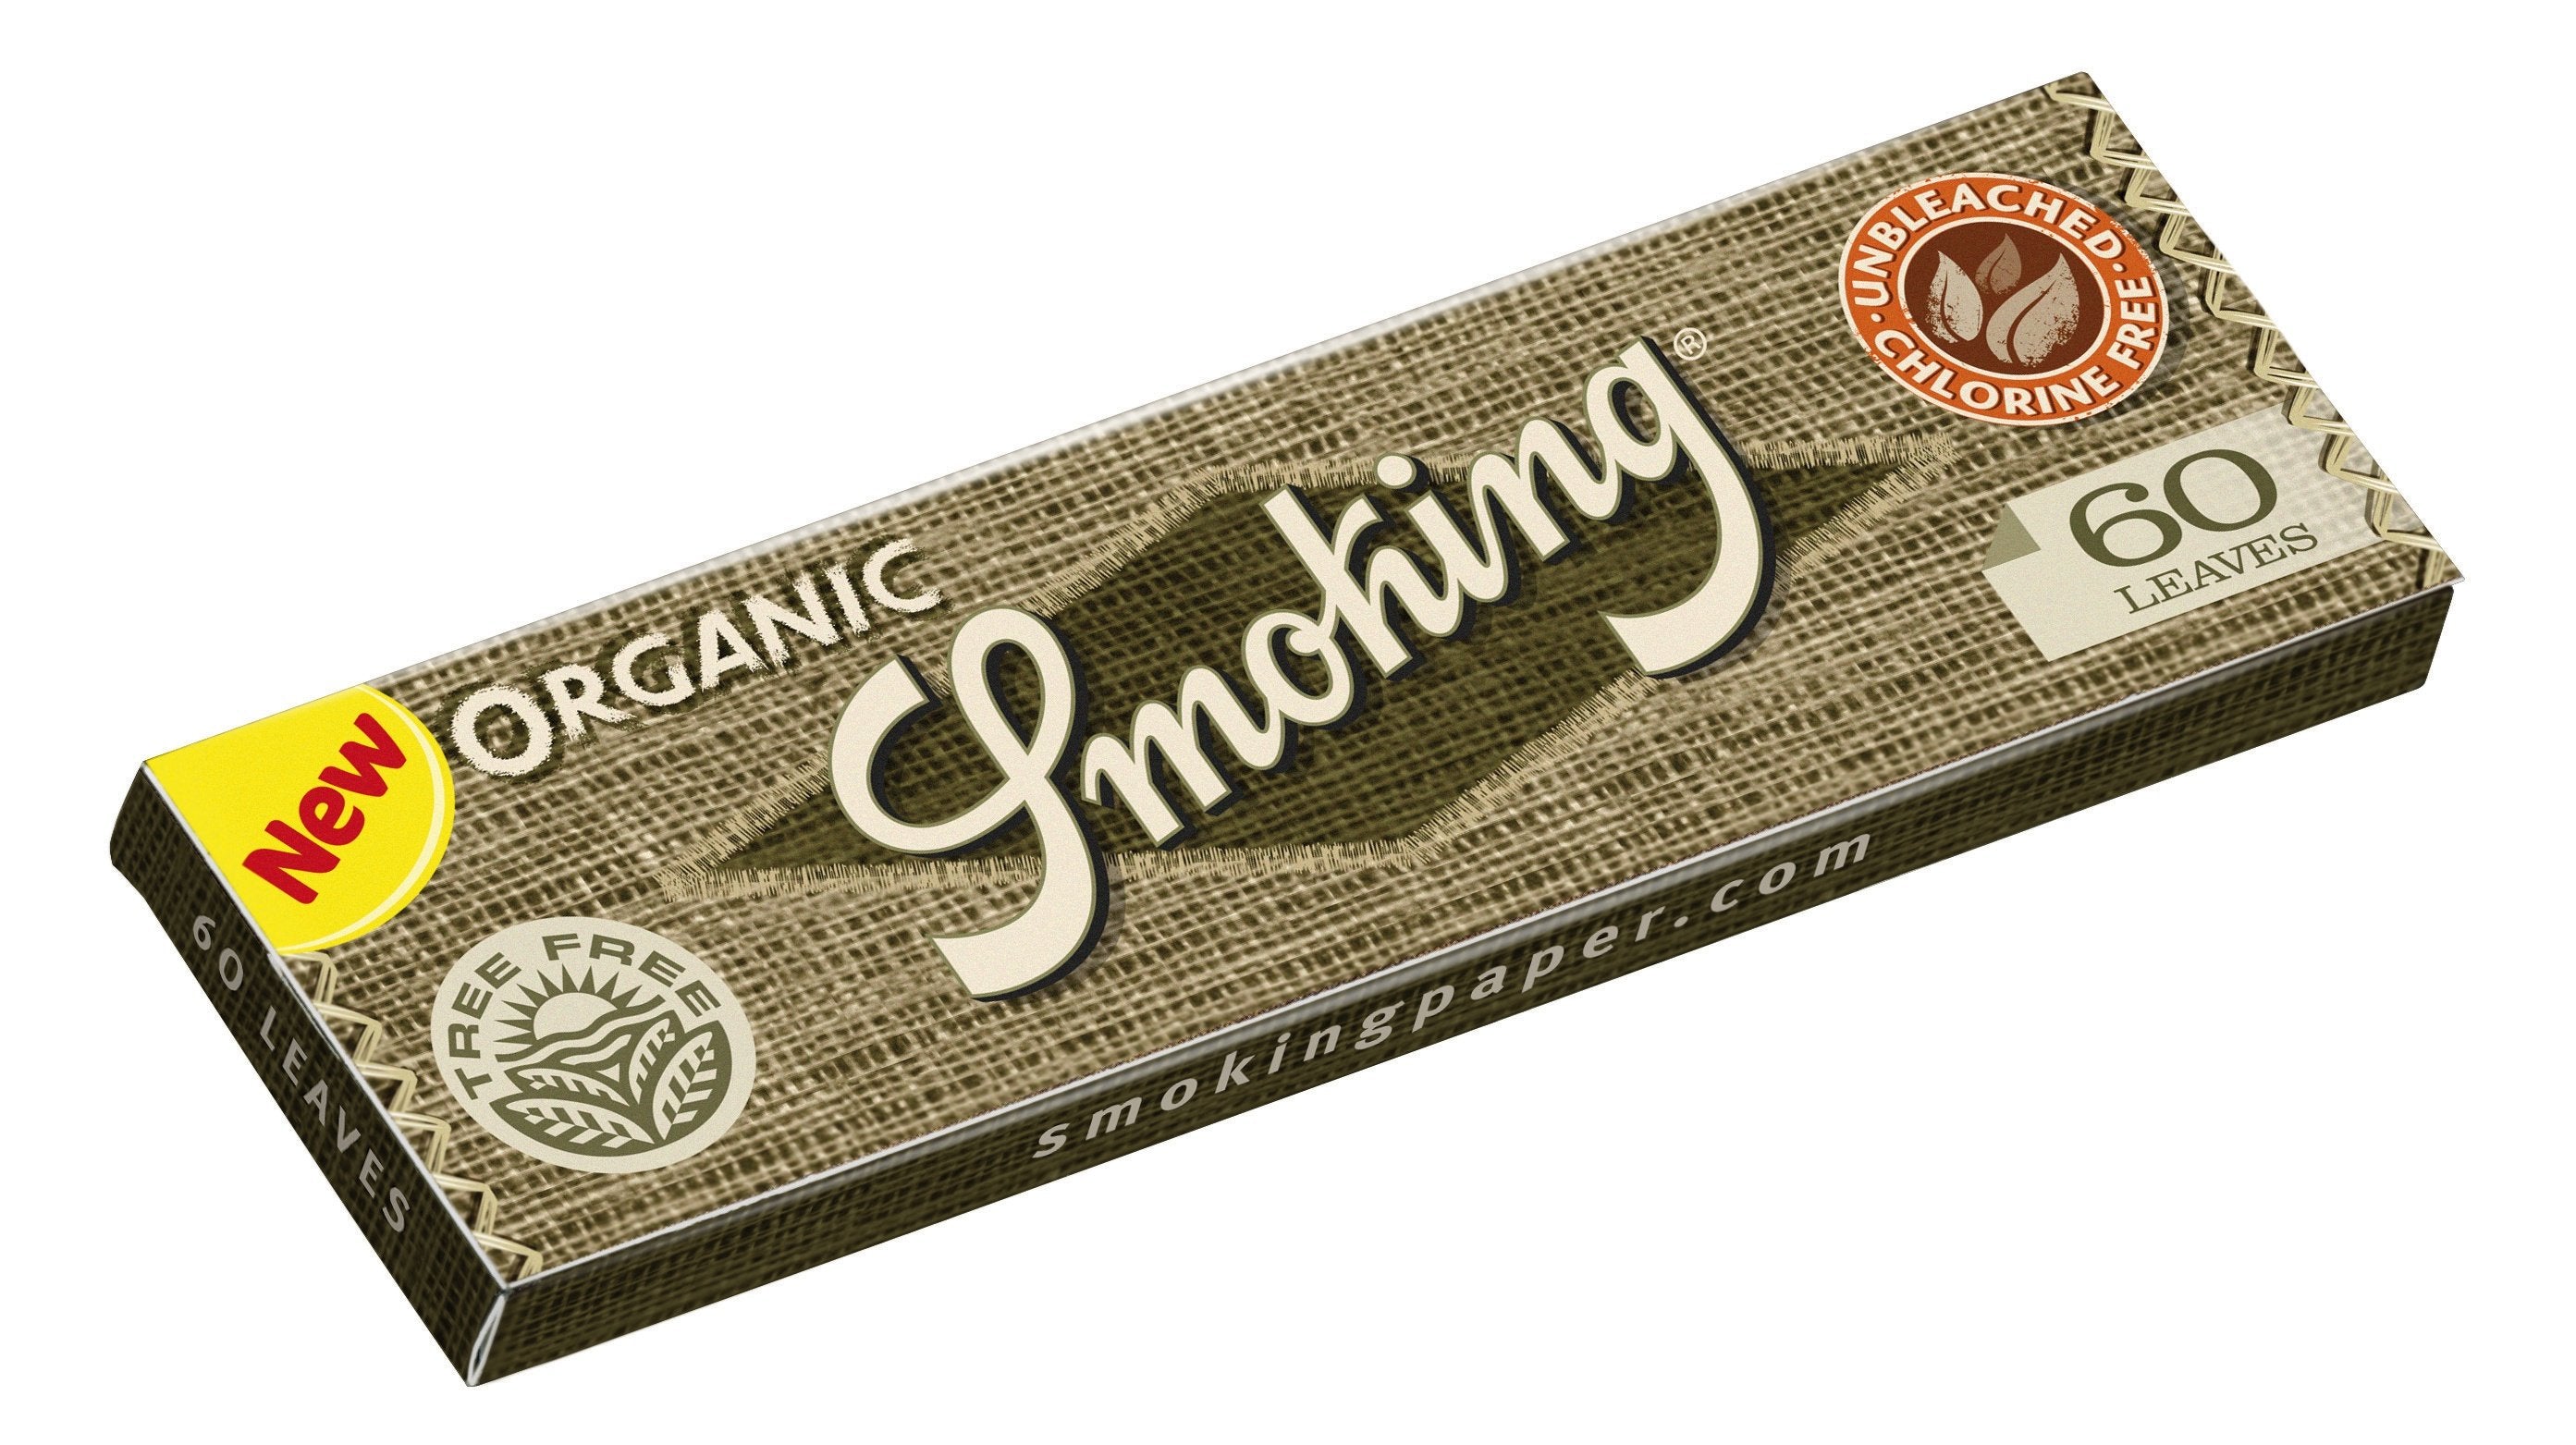 Smoking Organic Regular